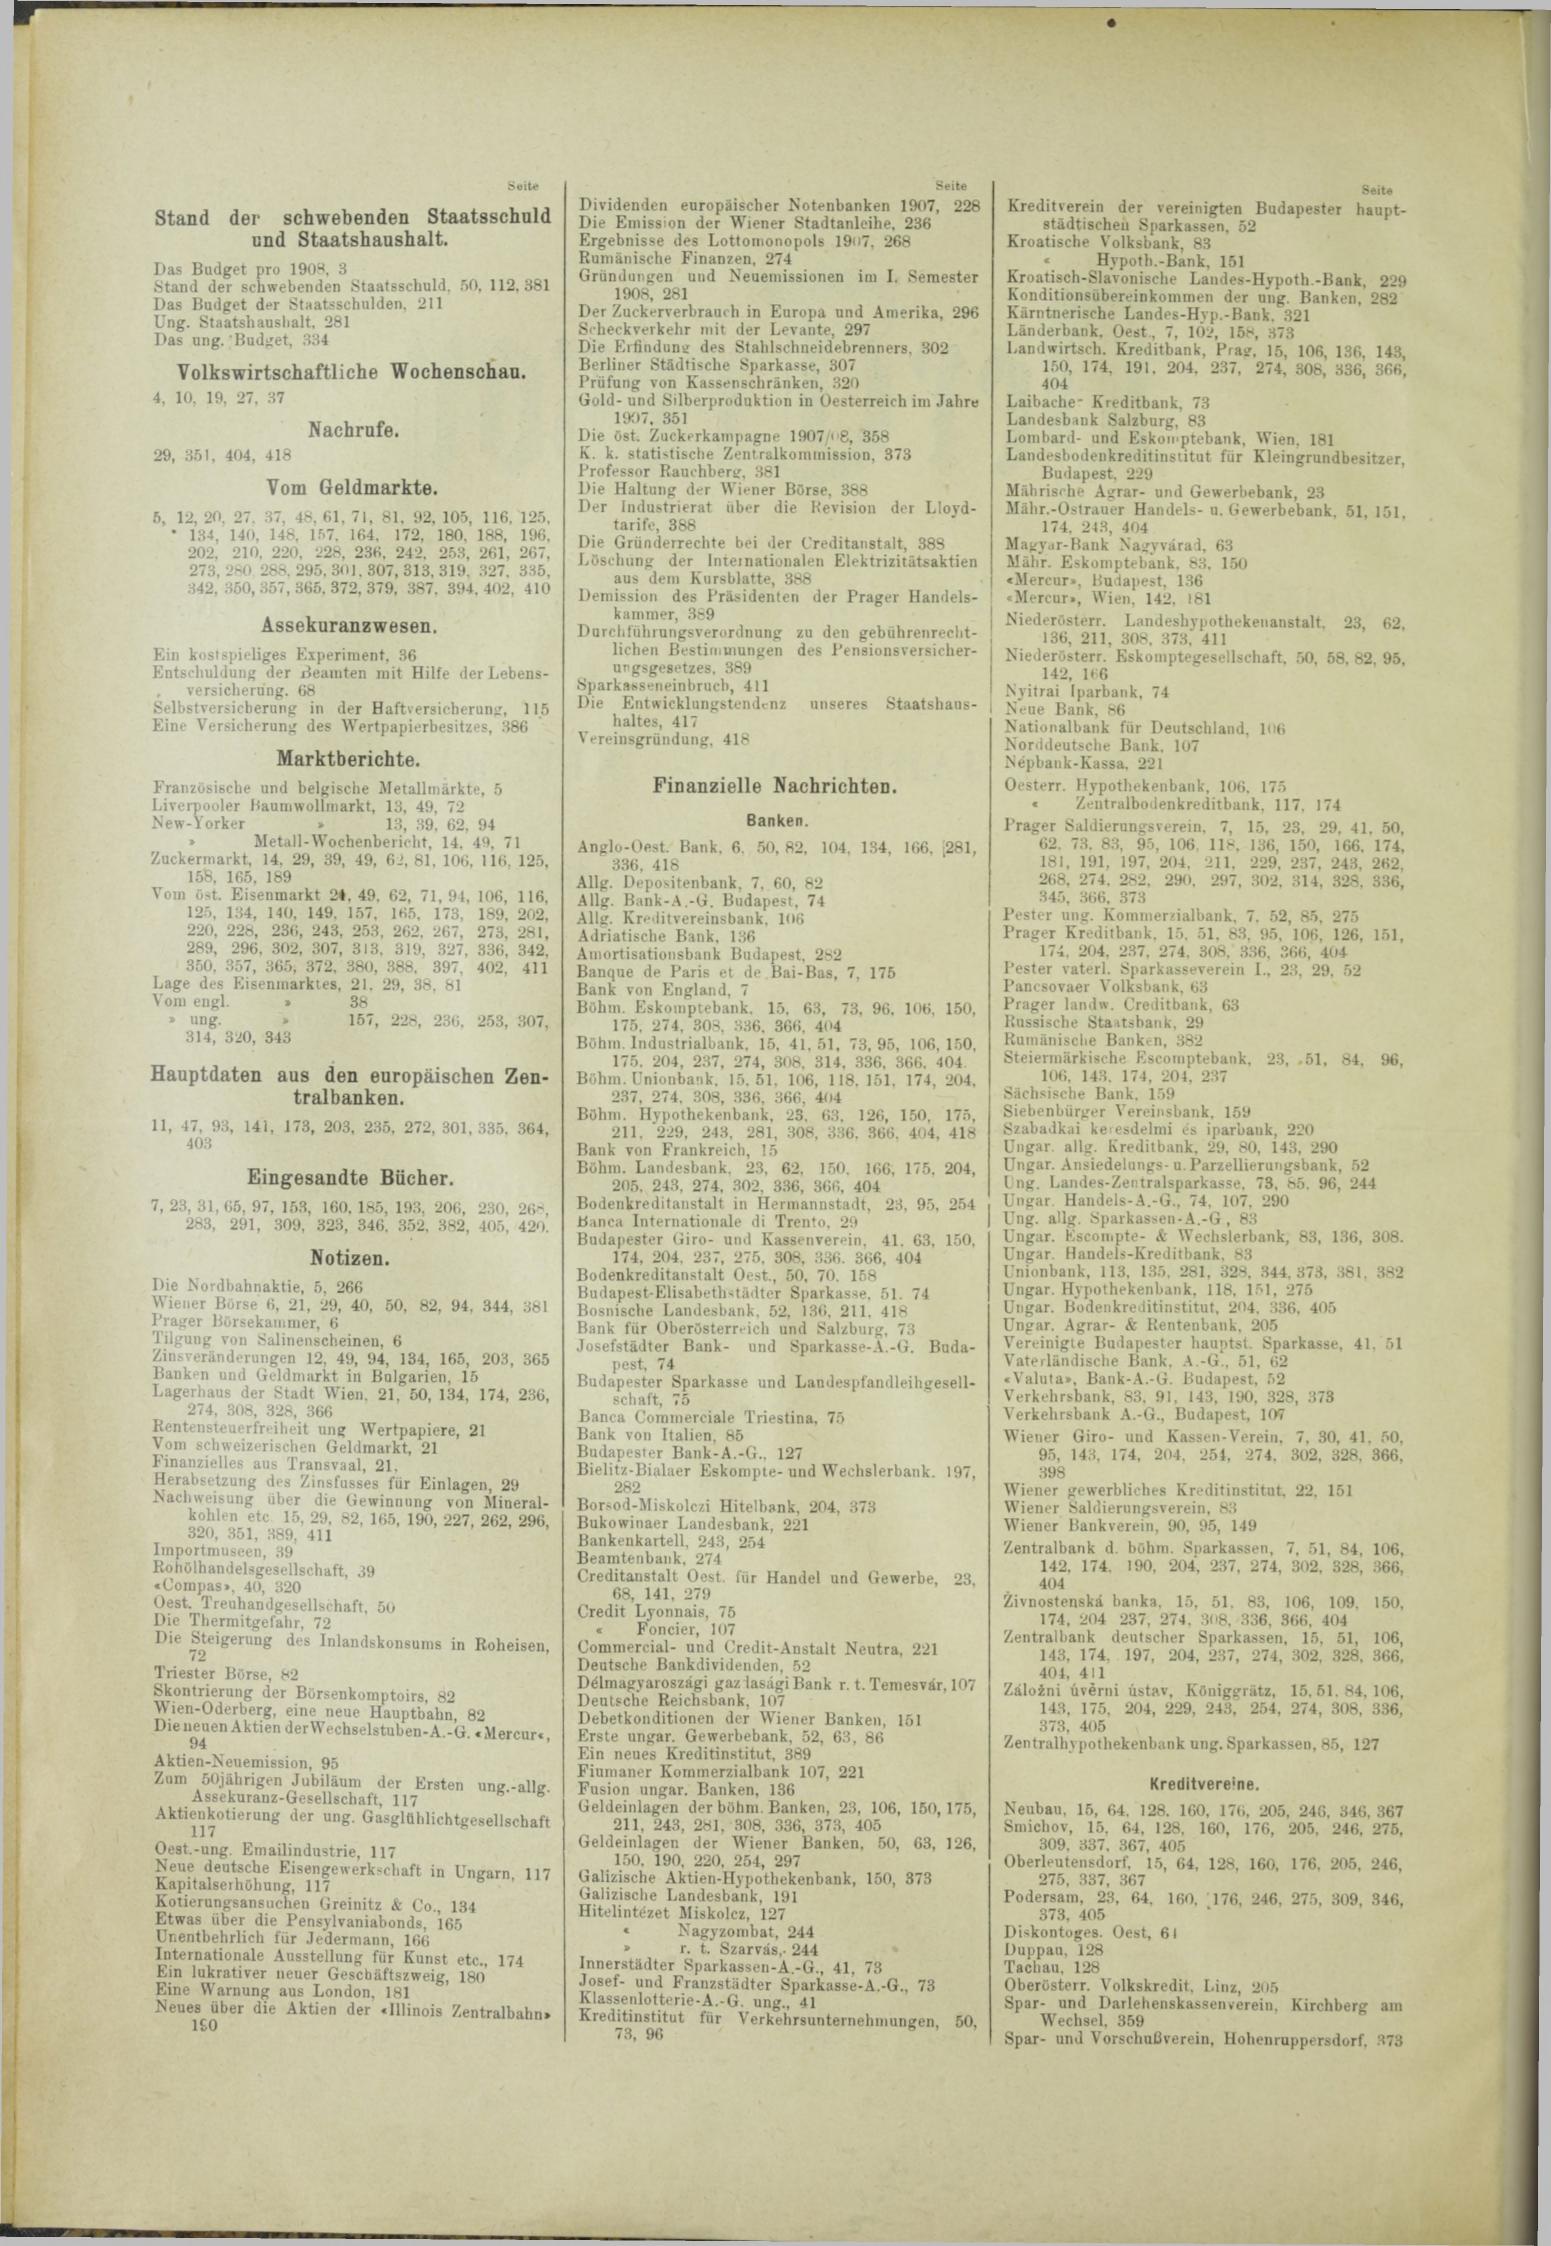 Der Tresor 29.08.1908 - Seite 8